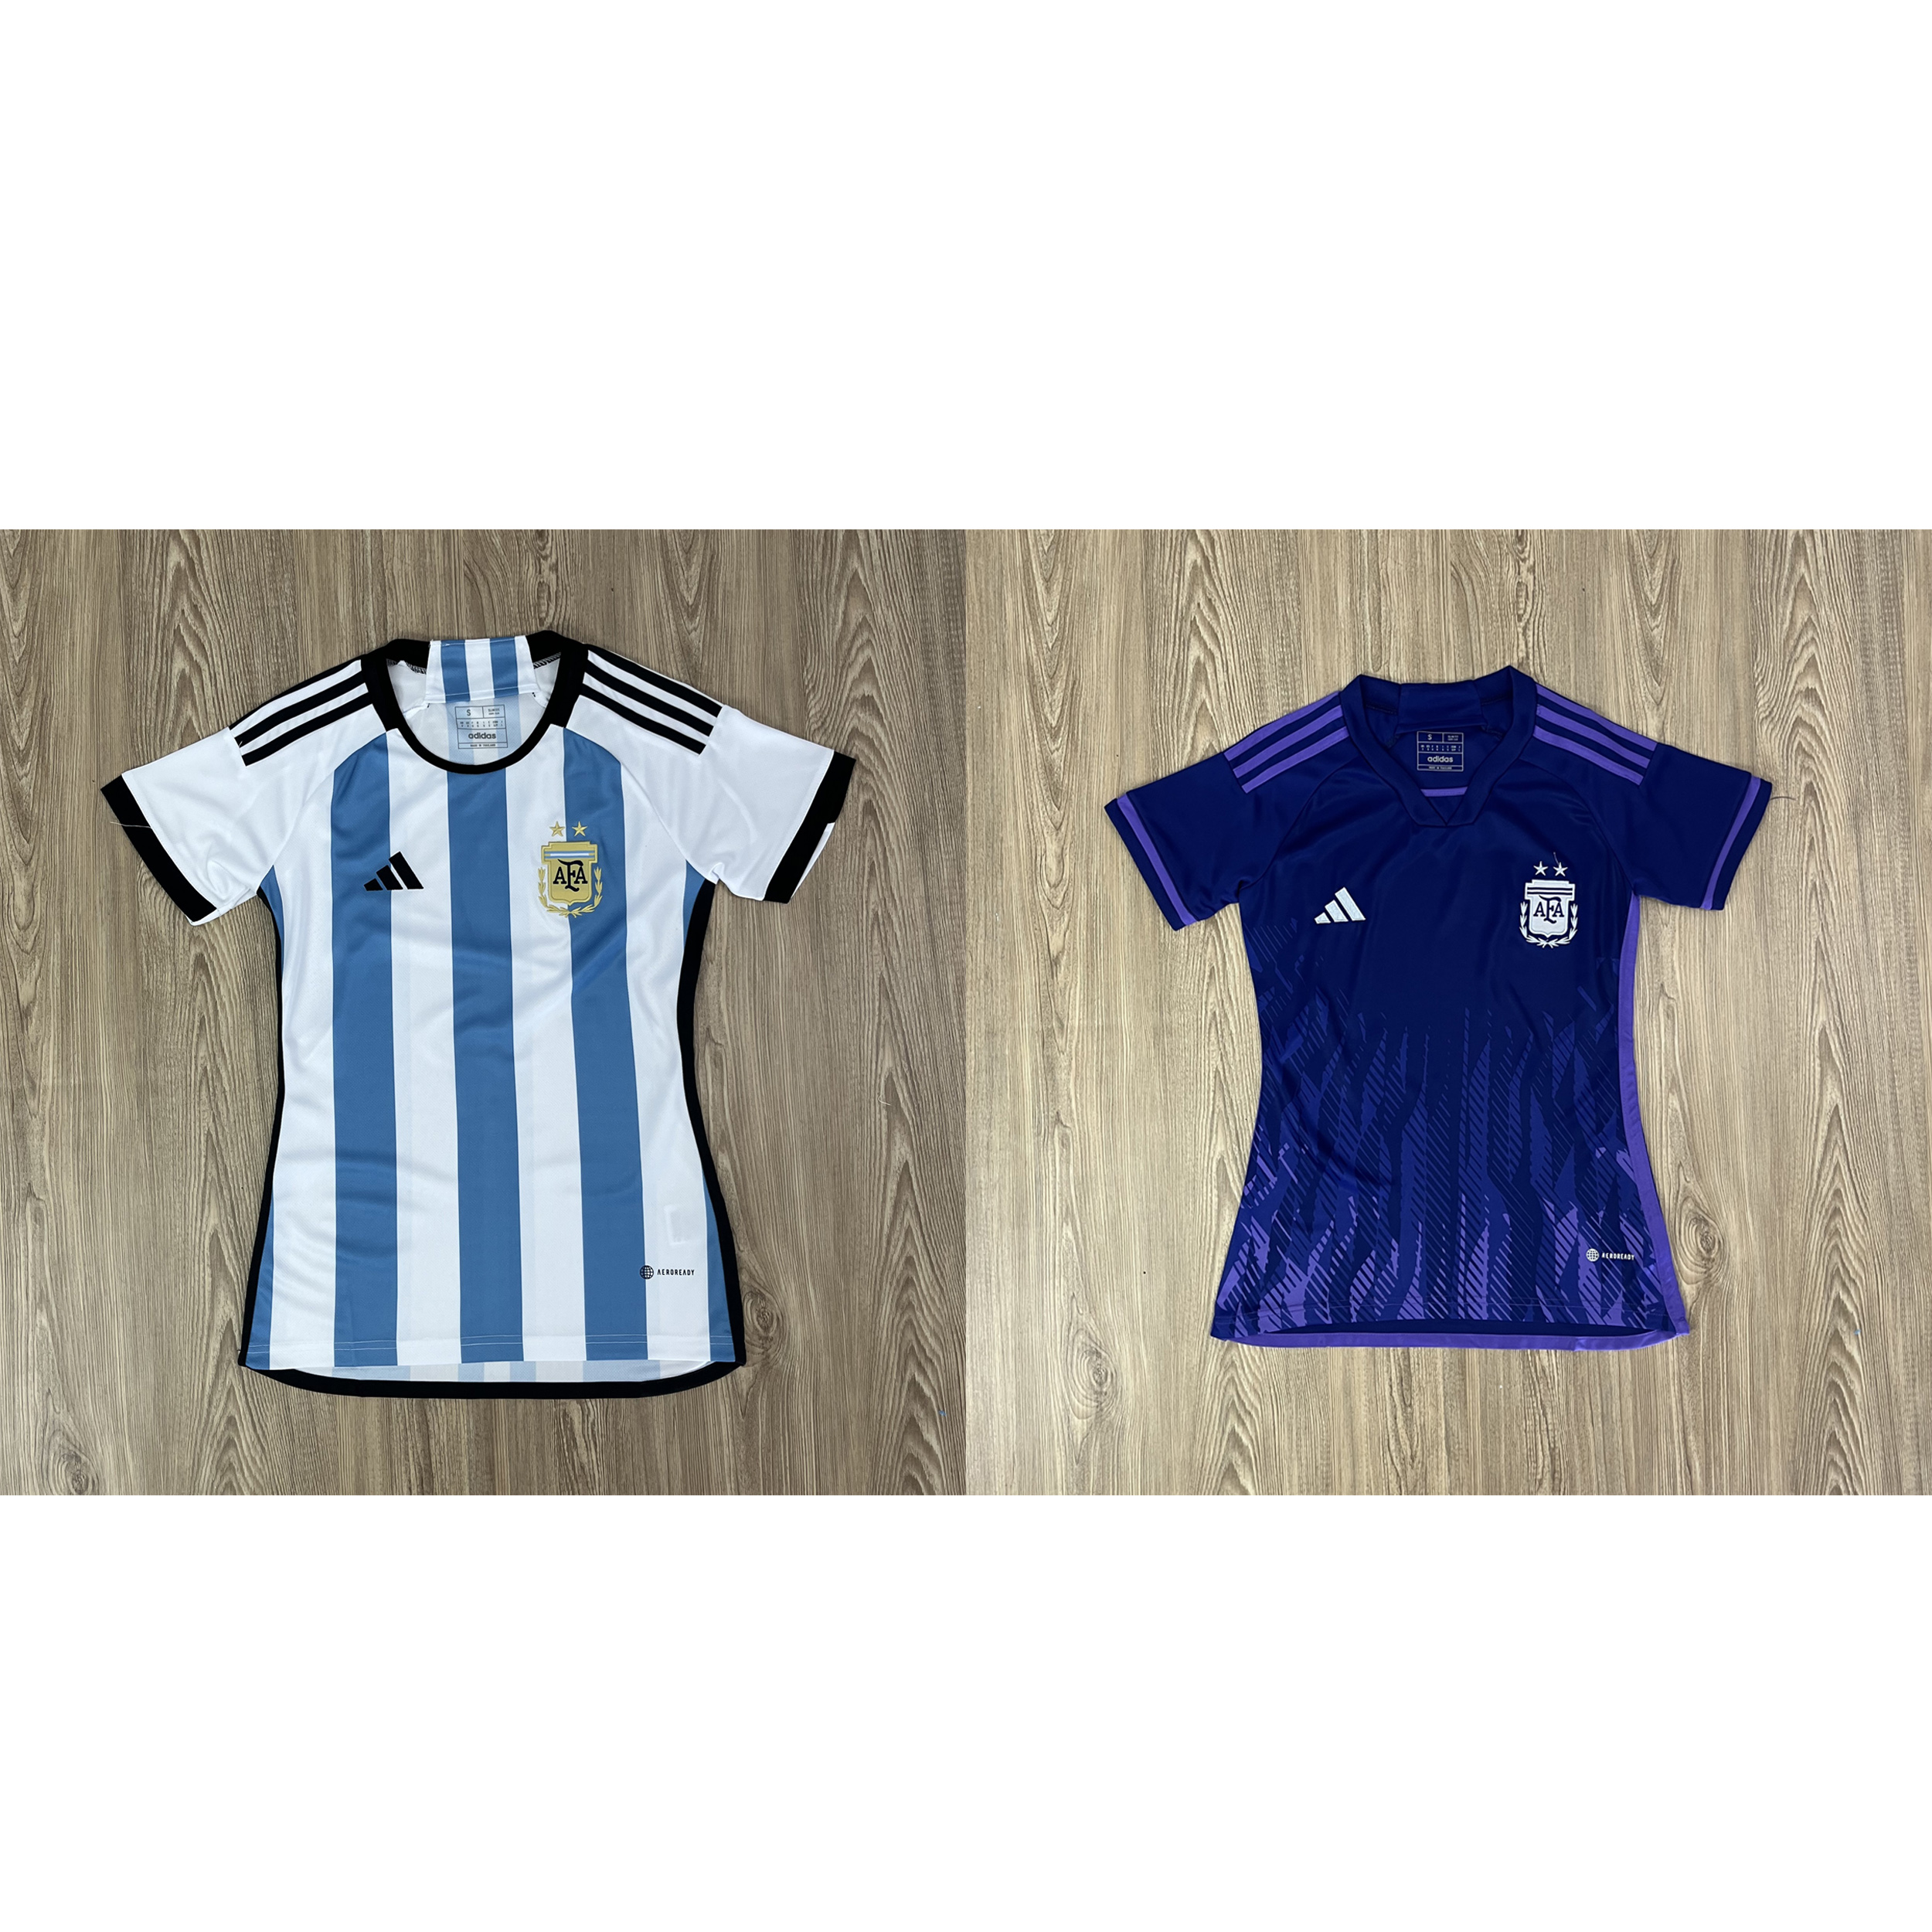 รูปภาพรายละเอียดของ เสื้อบอลผู้หญิง เสื้อบอลทีม Argentine แบบเดียวกับต้นฉบับ รับประกันคุณภาพ เกรดAAA